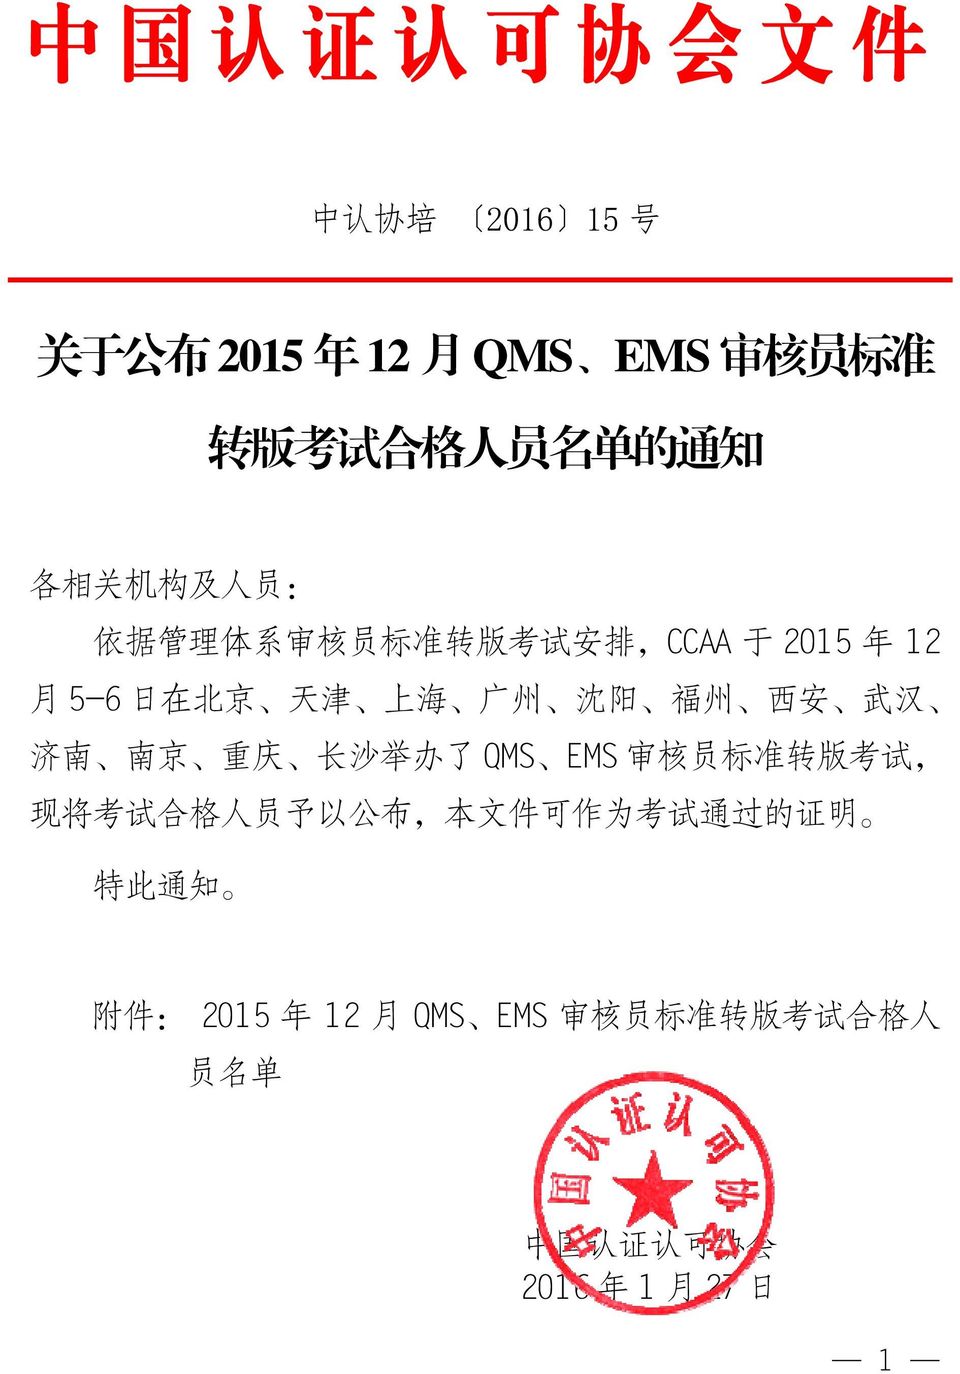 南 南 京 重 庆 长 沙 举 办 了 QMS EMS 审 核 员 标 准 转 版 考 试, 现 将 考 试 合 格 人 员 予 以 公 布, 本 文 件 可 作 为 考 试 通 过 的 证 明